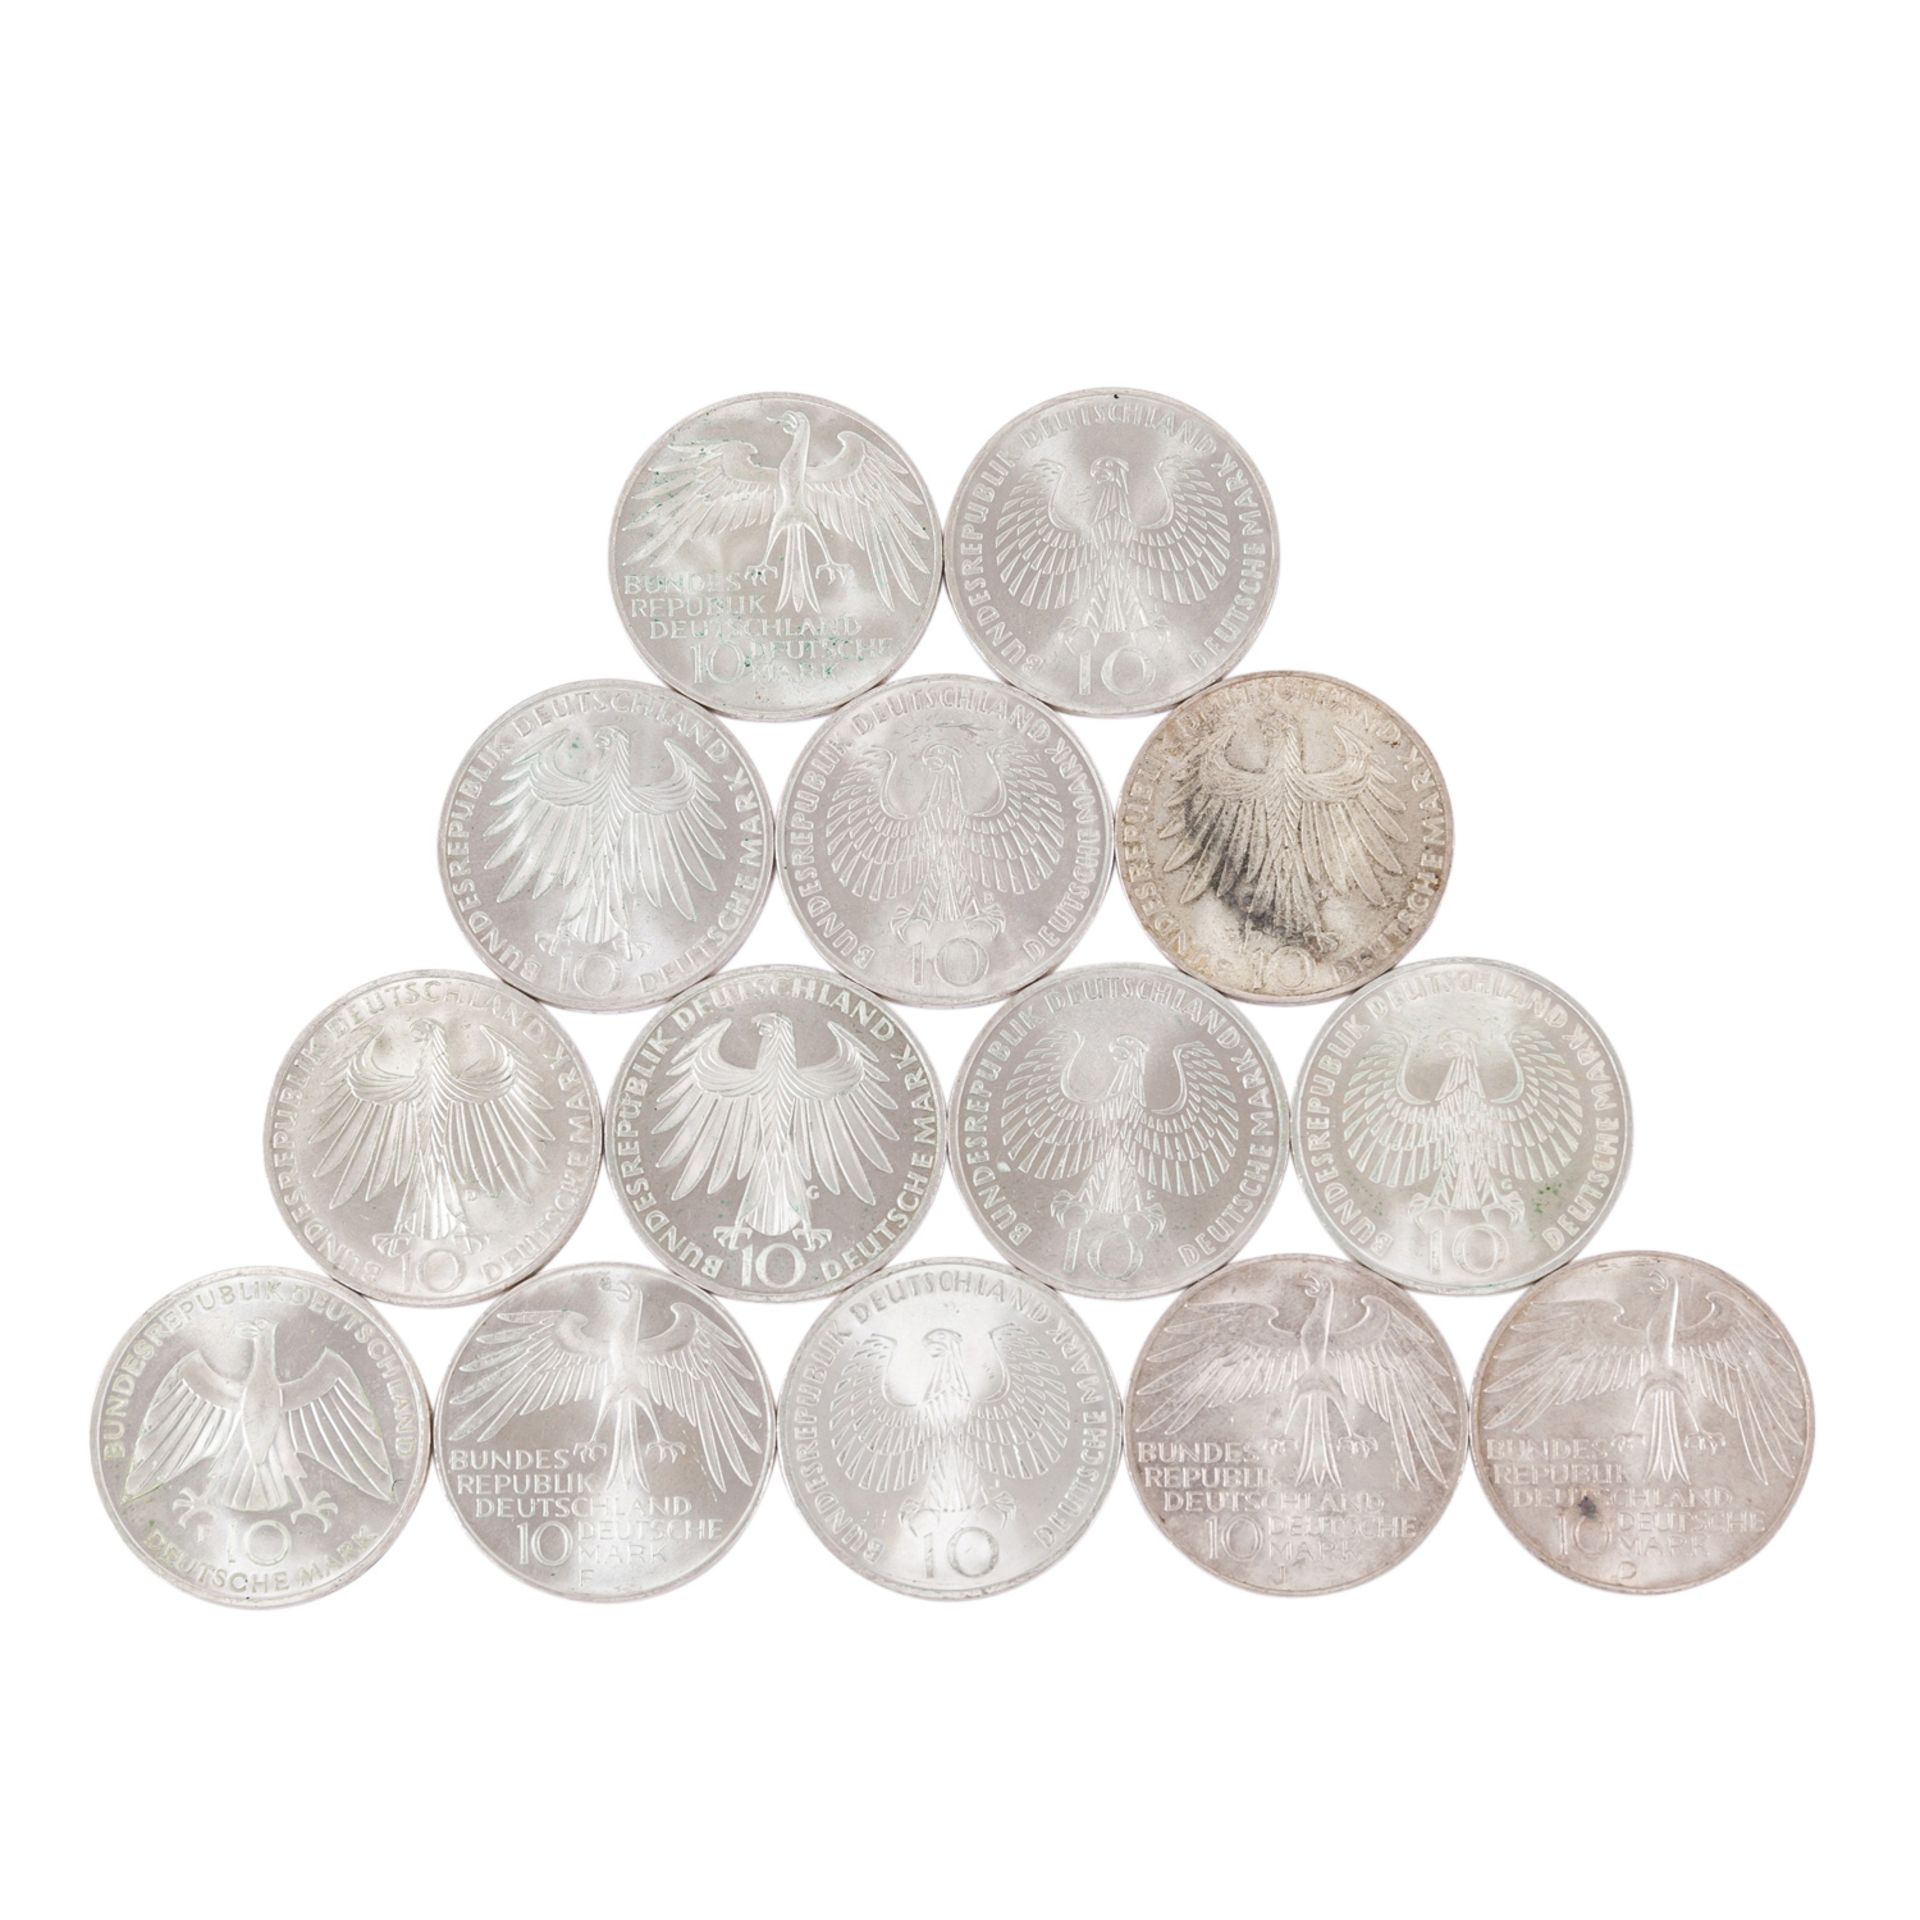 Sammlung BRD - Gedenkmünzen mit 41 x 5 DM und 14 x 5 DM - Bild 3 aus 6